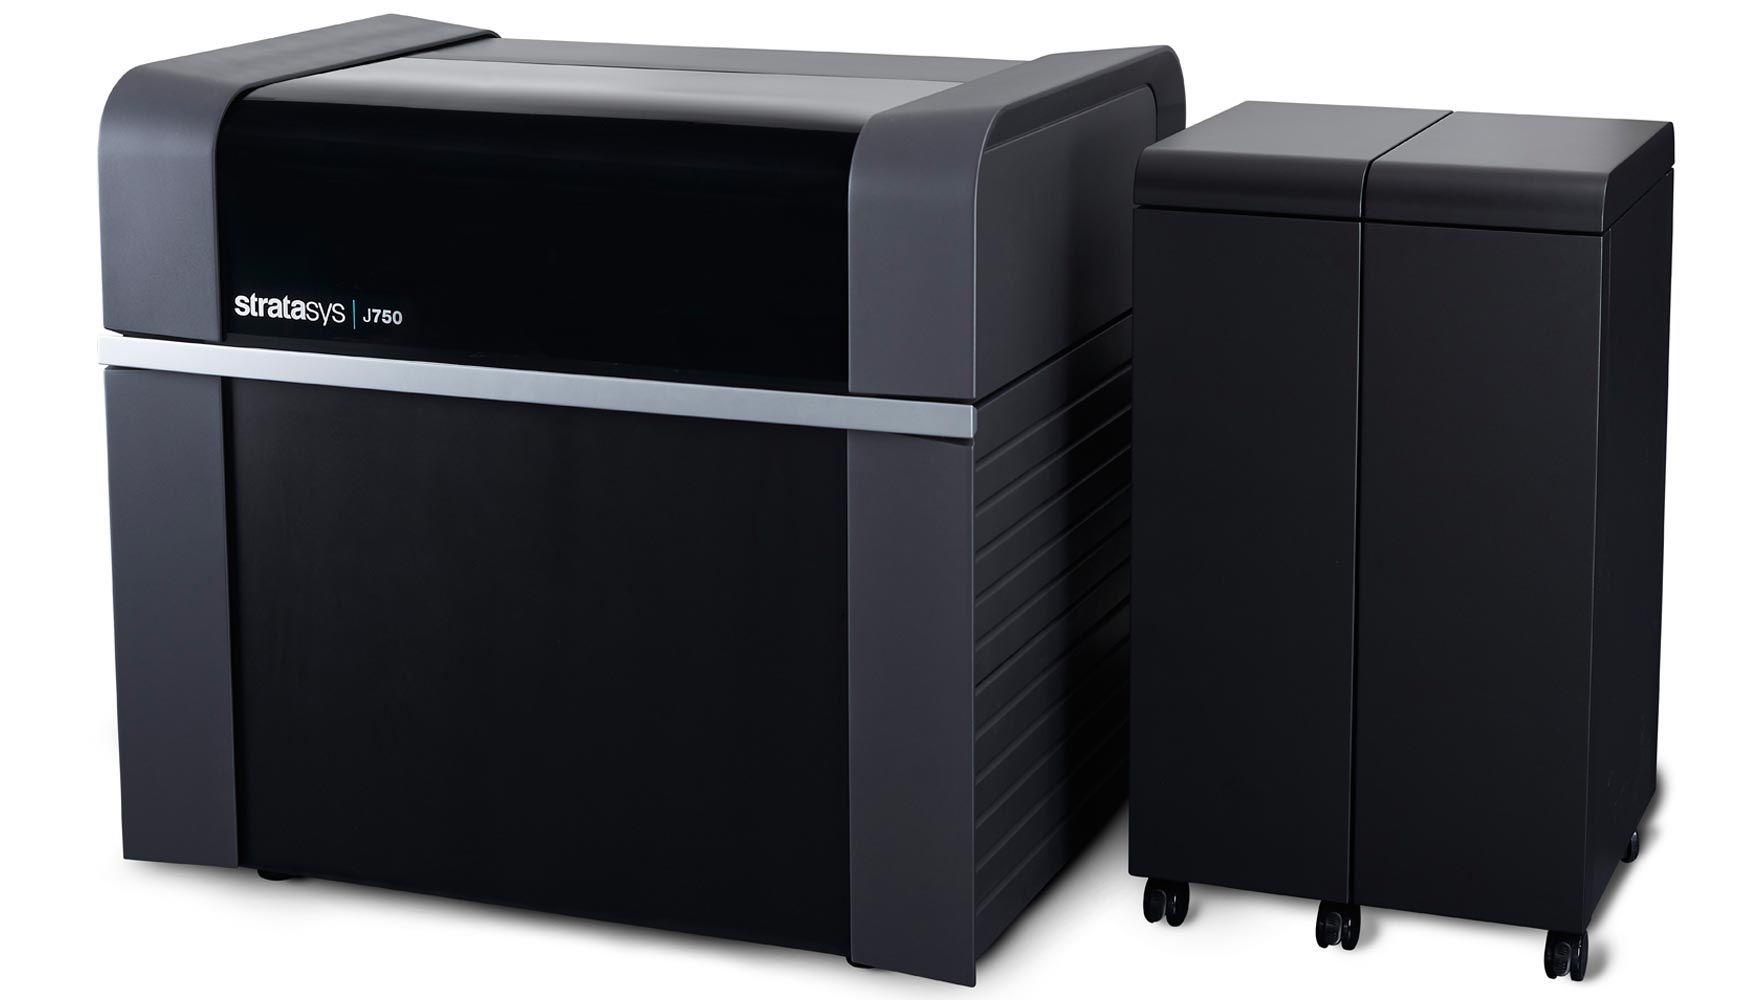 La nueva impresora 3D modelo J750 de Stratasys puede imprimir con mltiples materiales y a todo color...